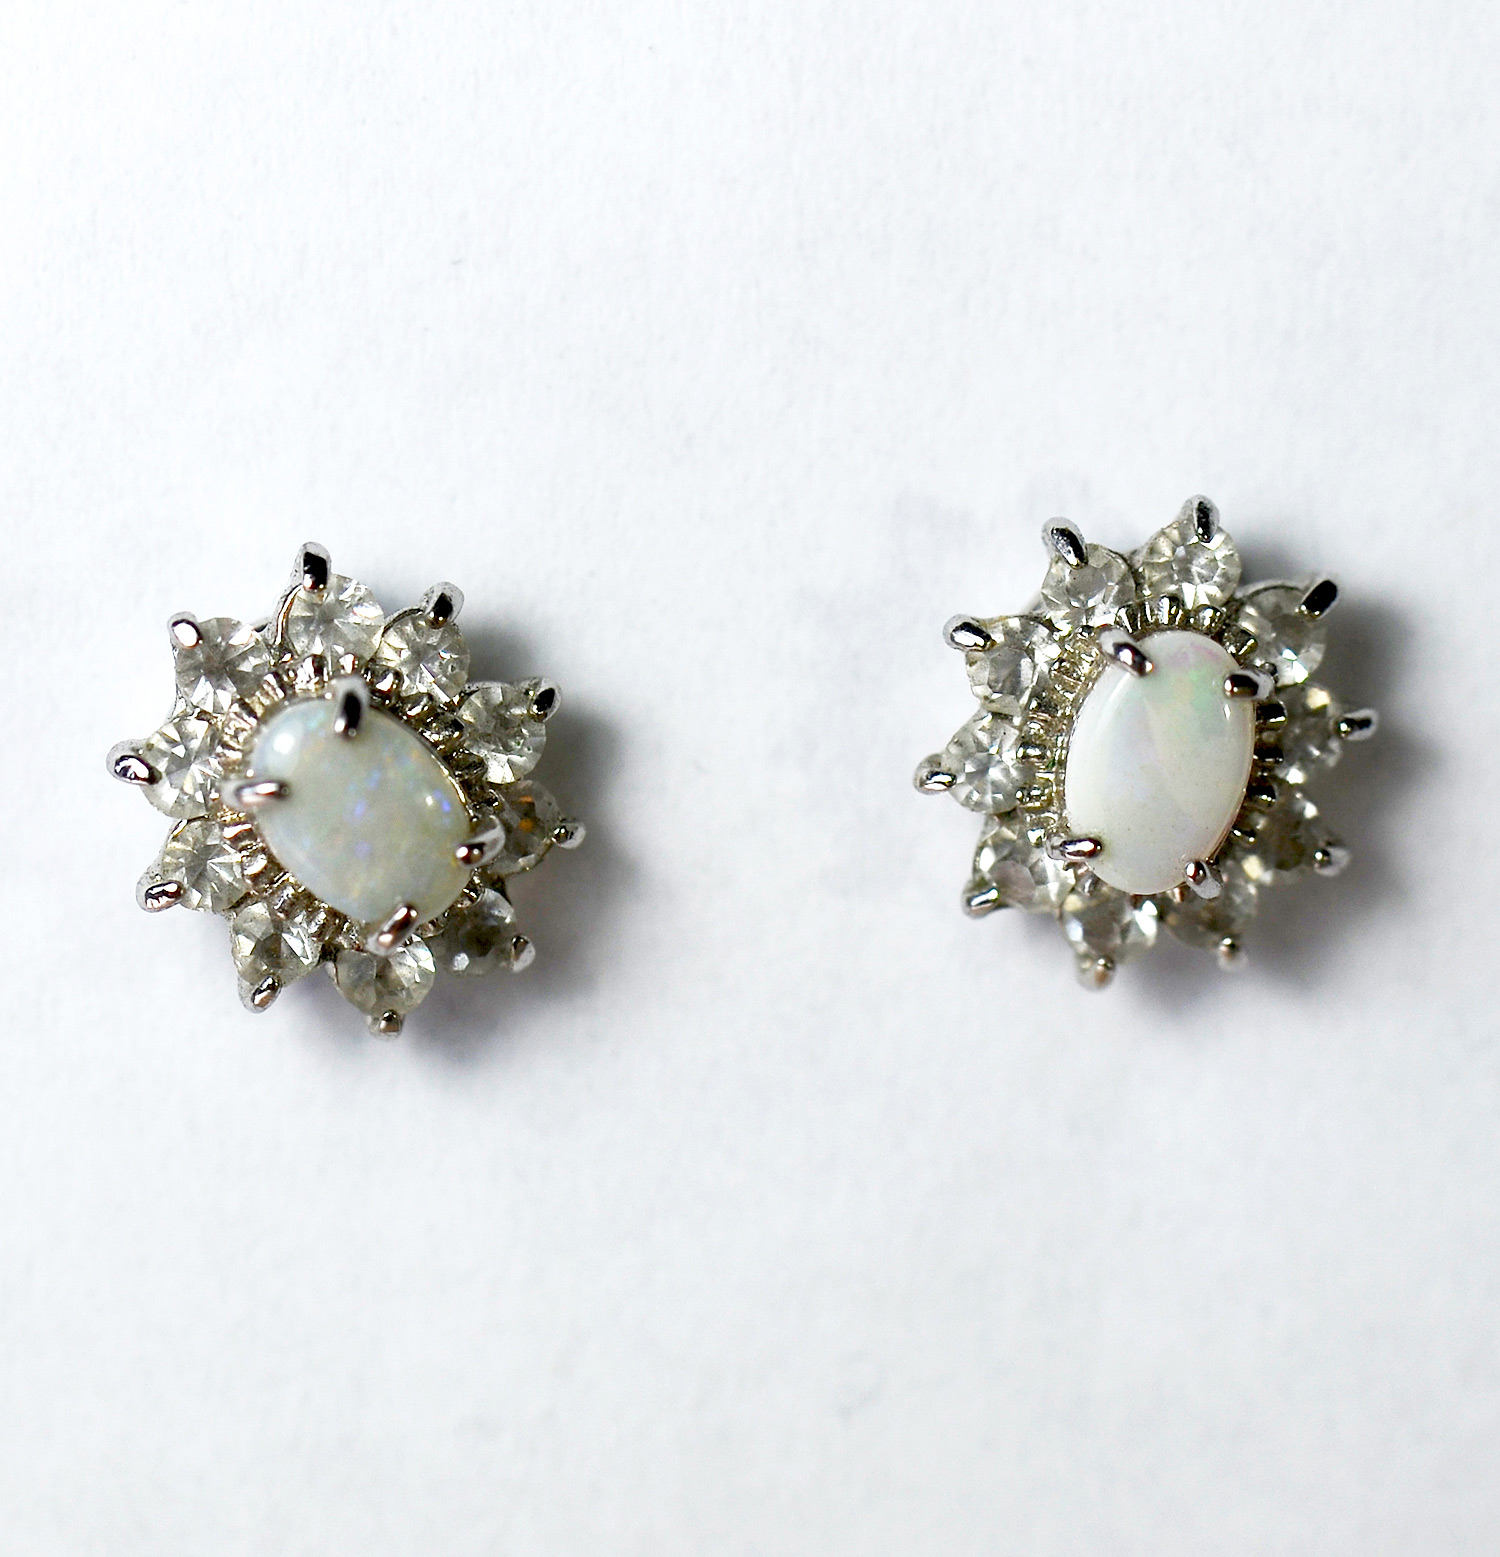 Opal Earrings Sterling Silver